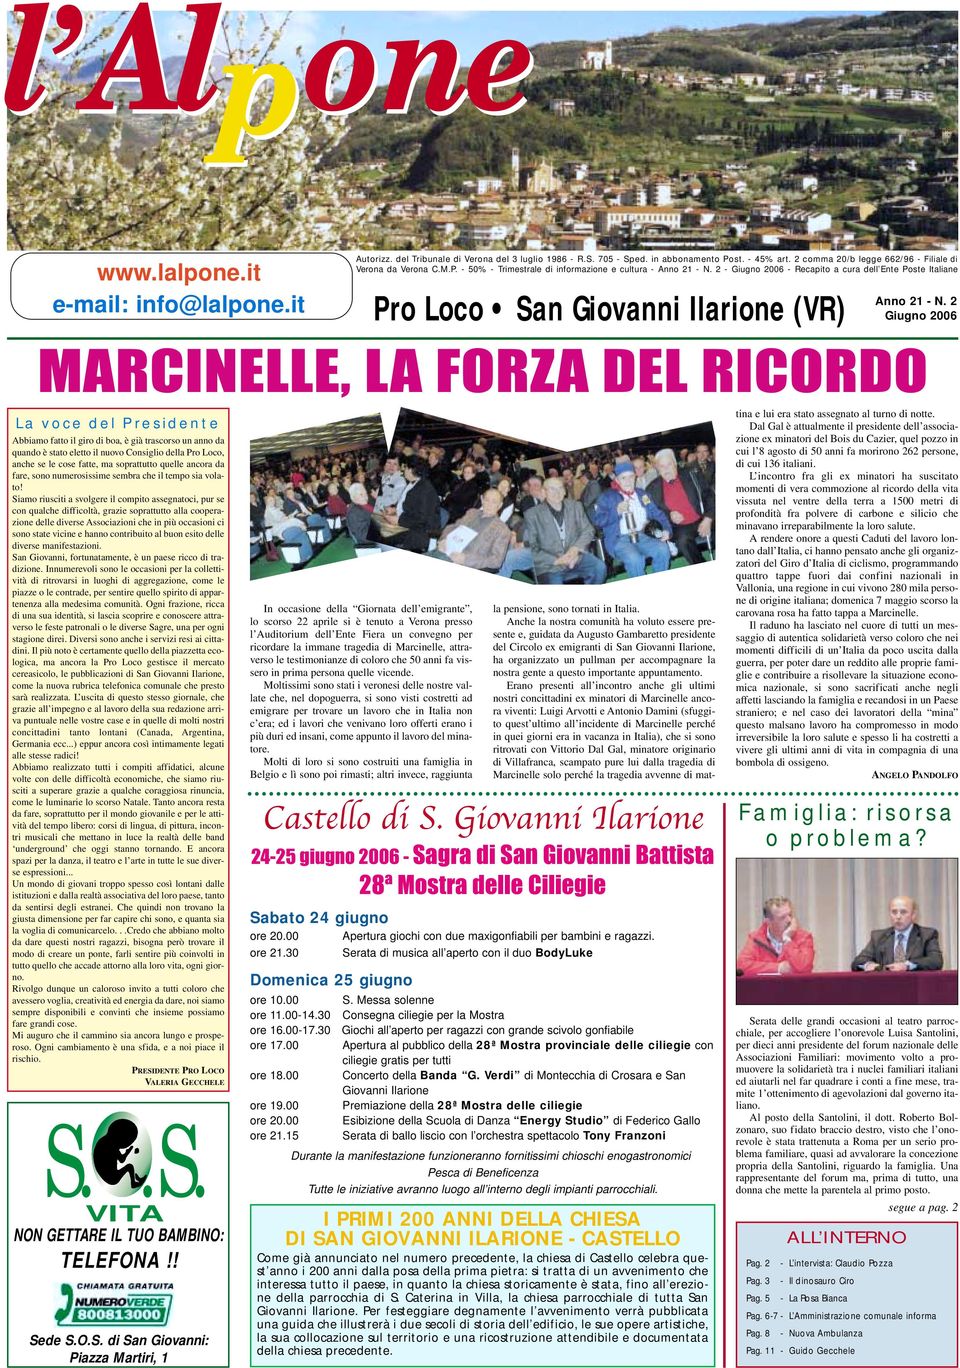 2 - Giugno 2006 - Recapito a cura dell Ente Poste Italiane Pro Loco San Giovanni Ilarione (VR) Anno 21 - N.